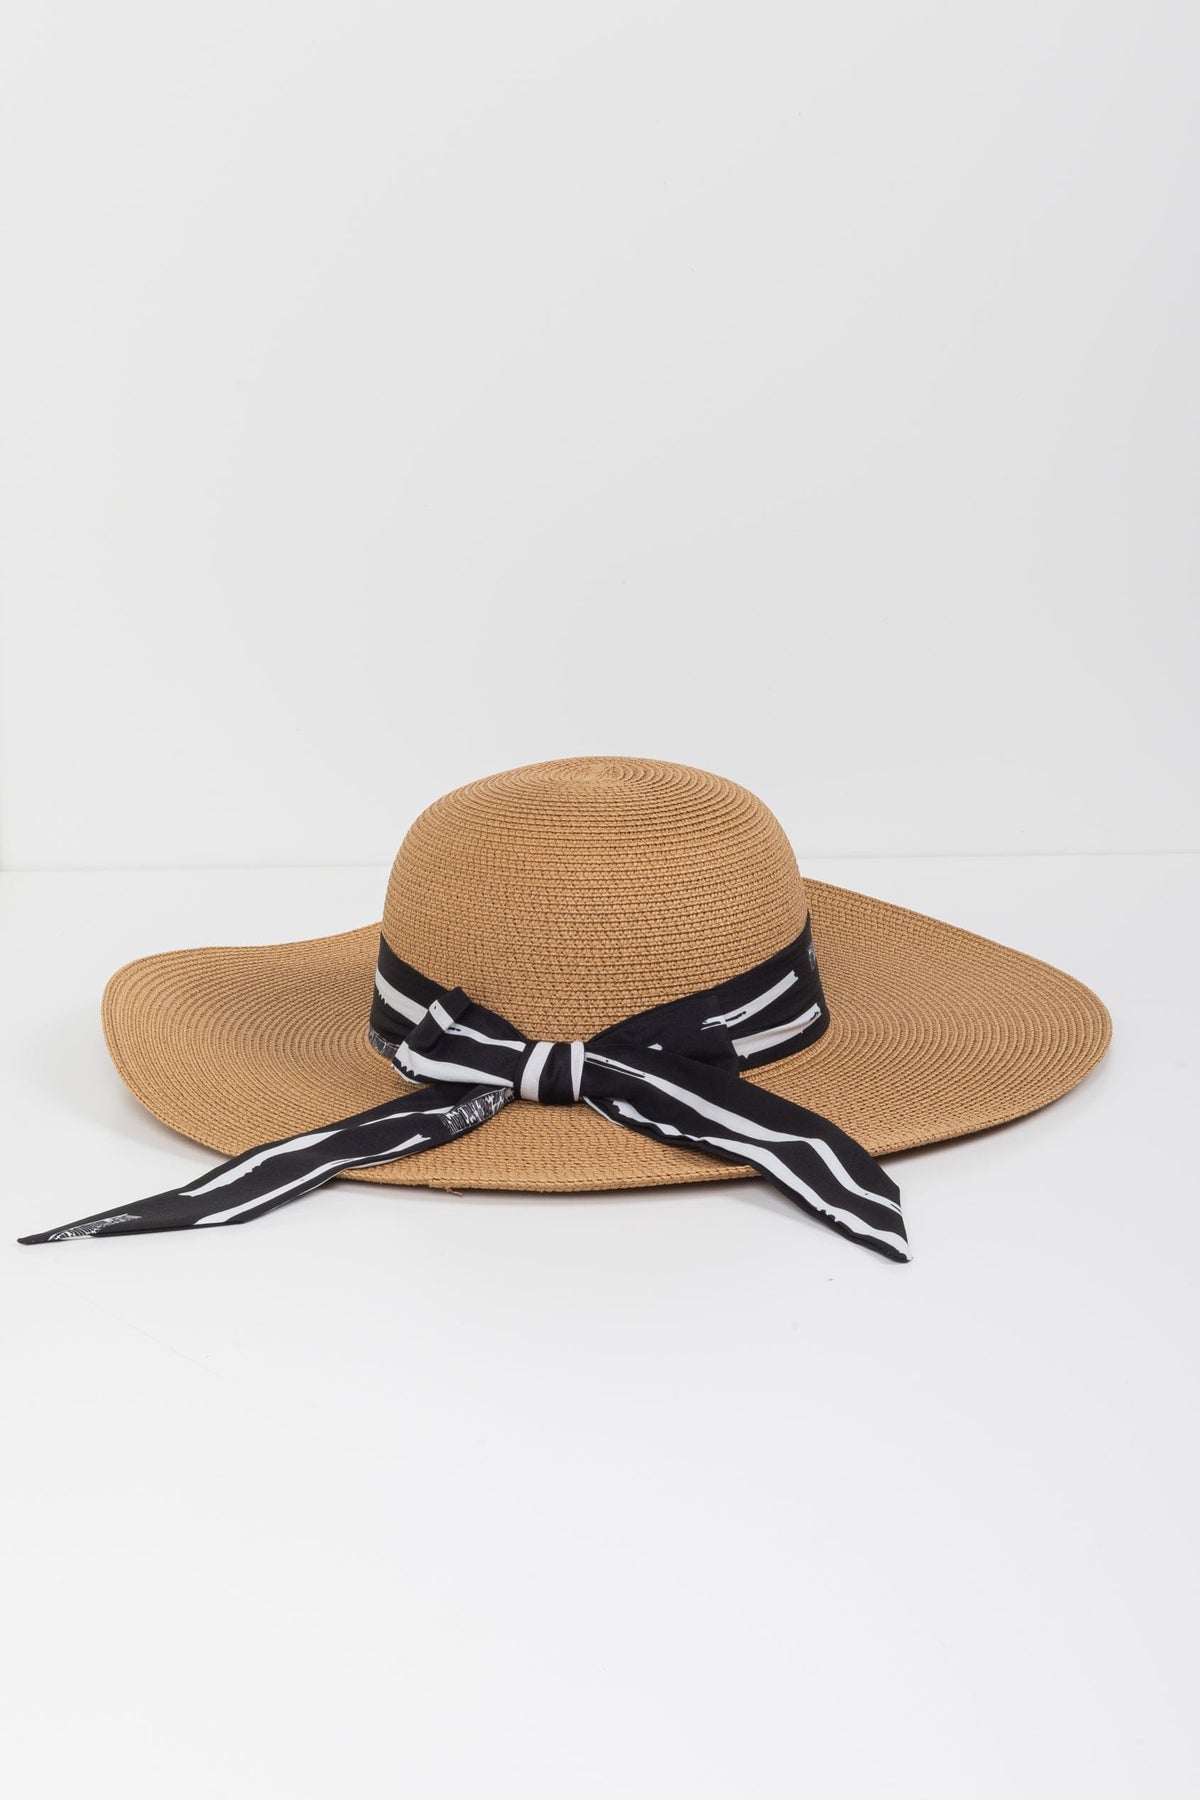 Straw Beach Hat